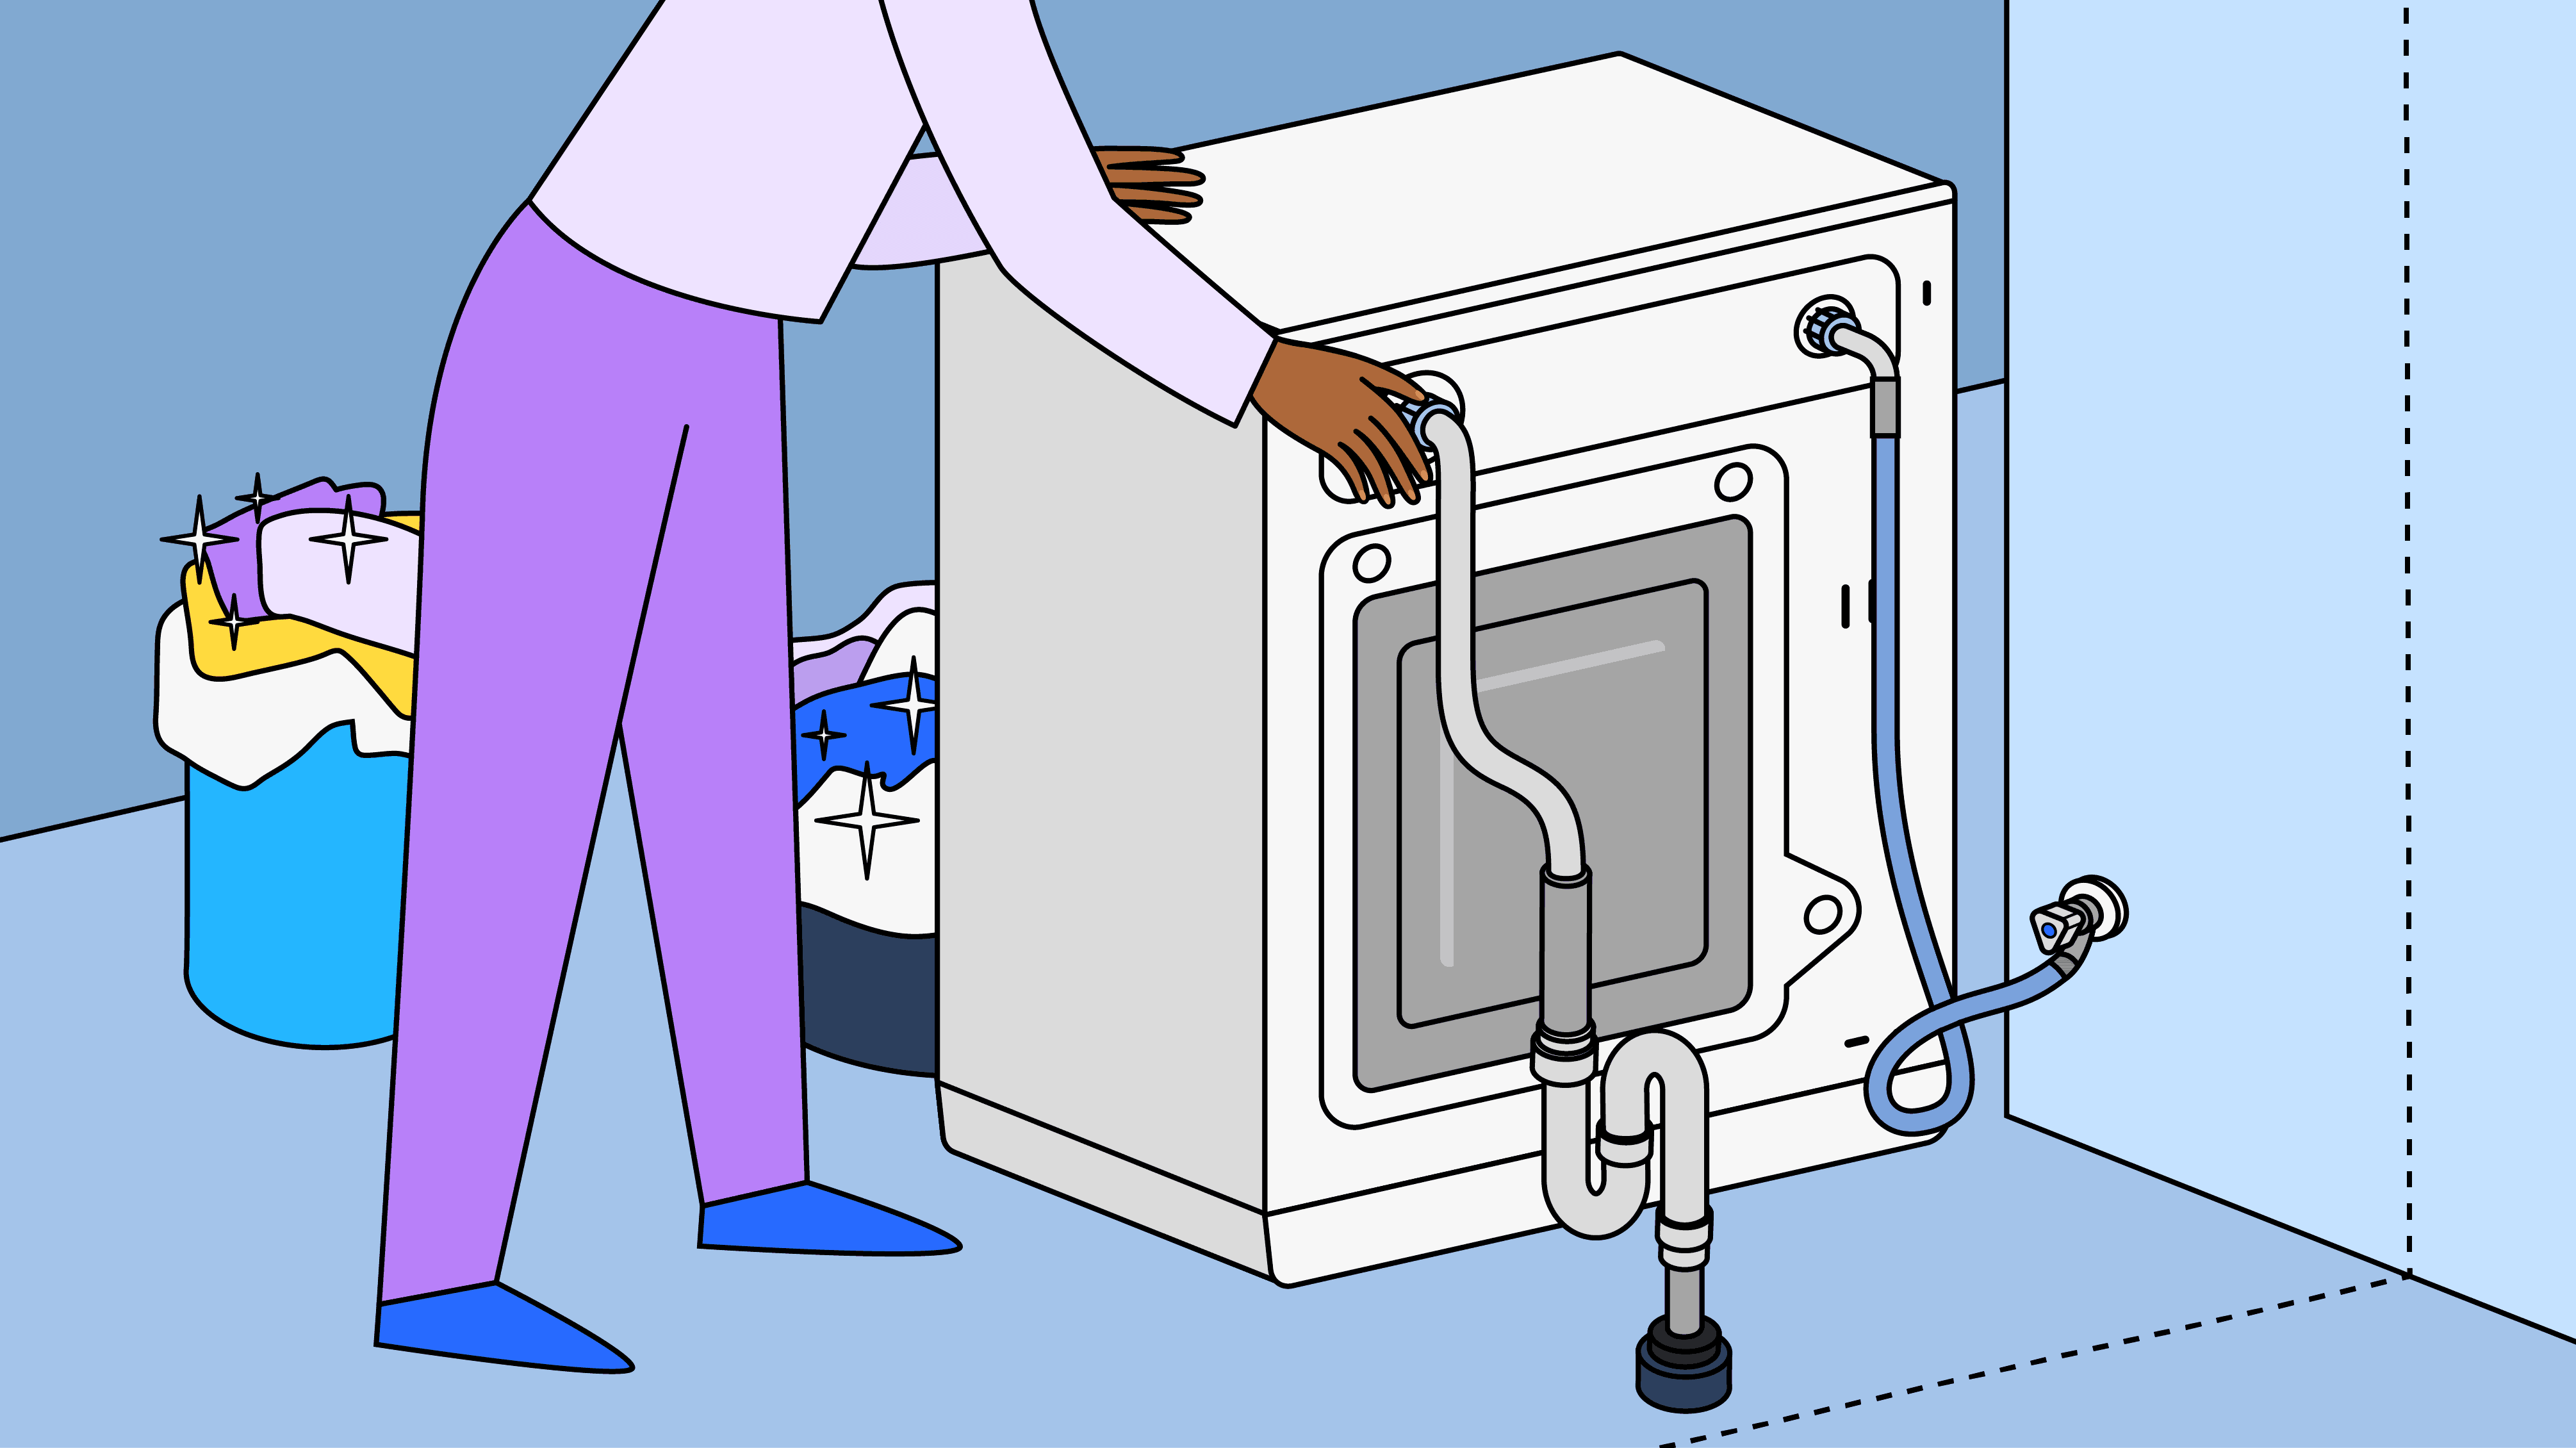 Comment vidanger (faire la vidange) une machine sans mettre de l'eau partout ?